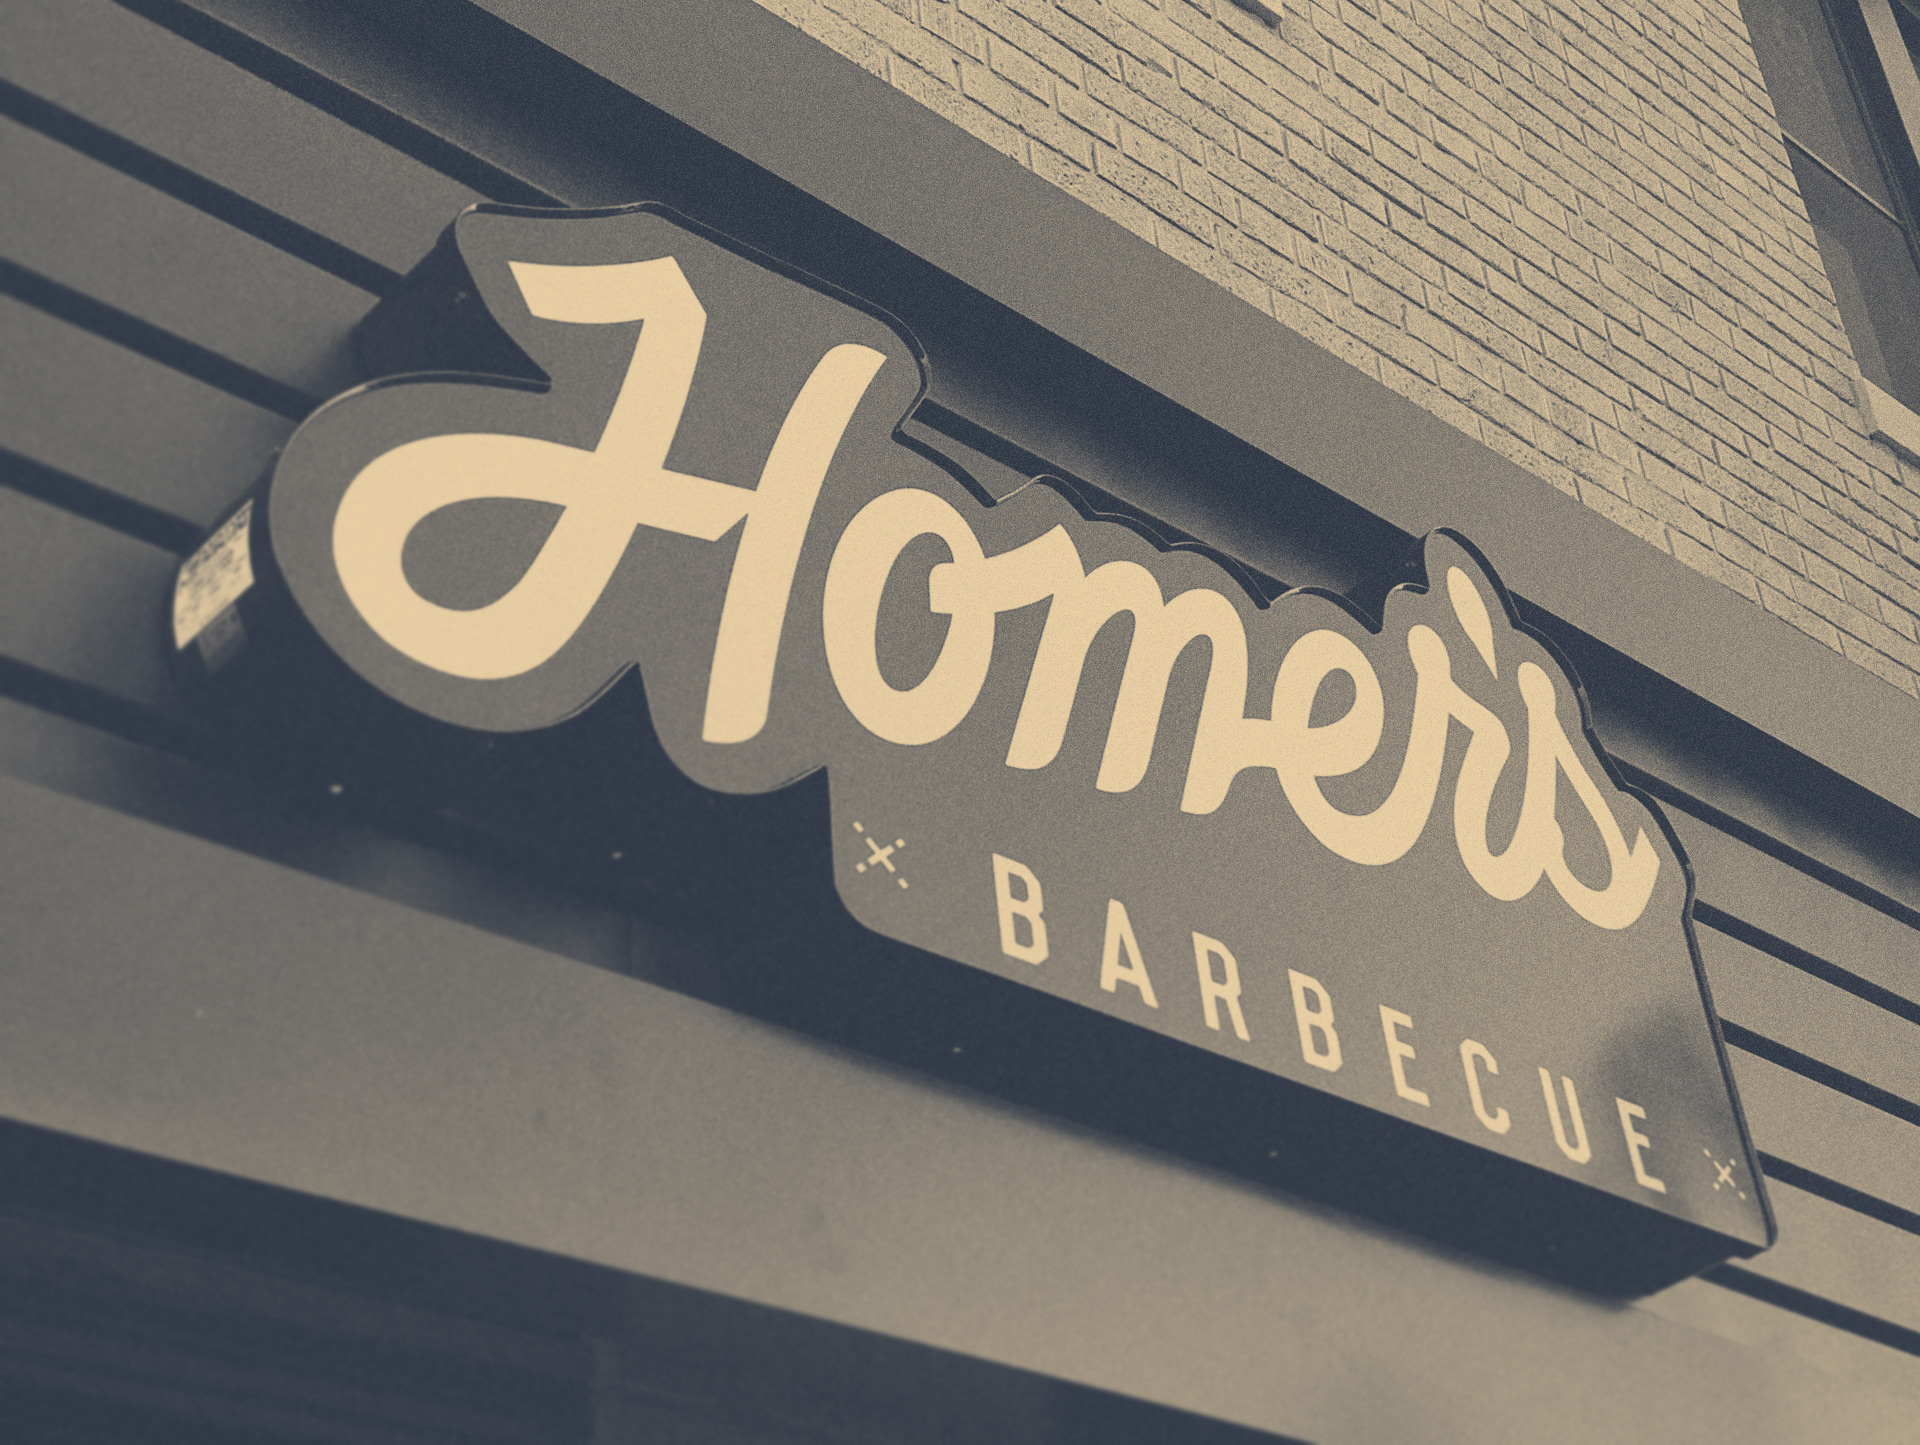 Homer's Barbecue | Restaurant Branding